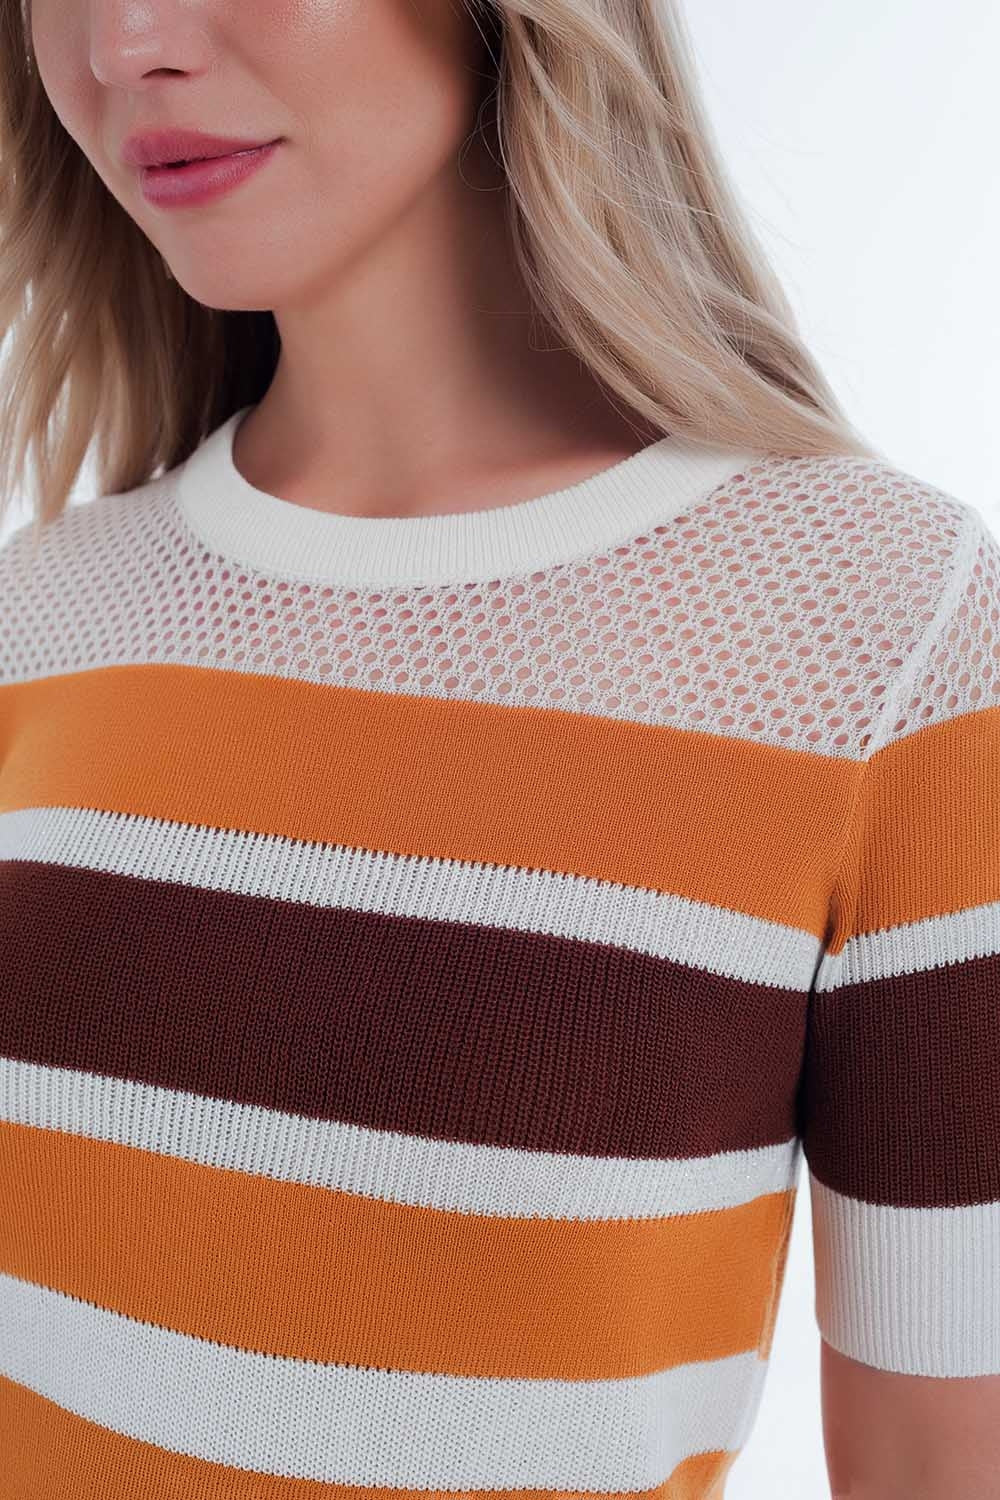 TEEK - Mustard Striped Open Knit Sweater TOPS TEEK M   